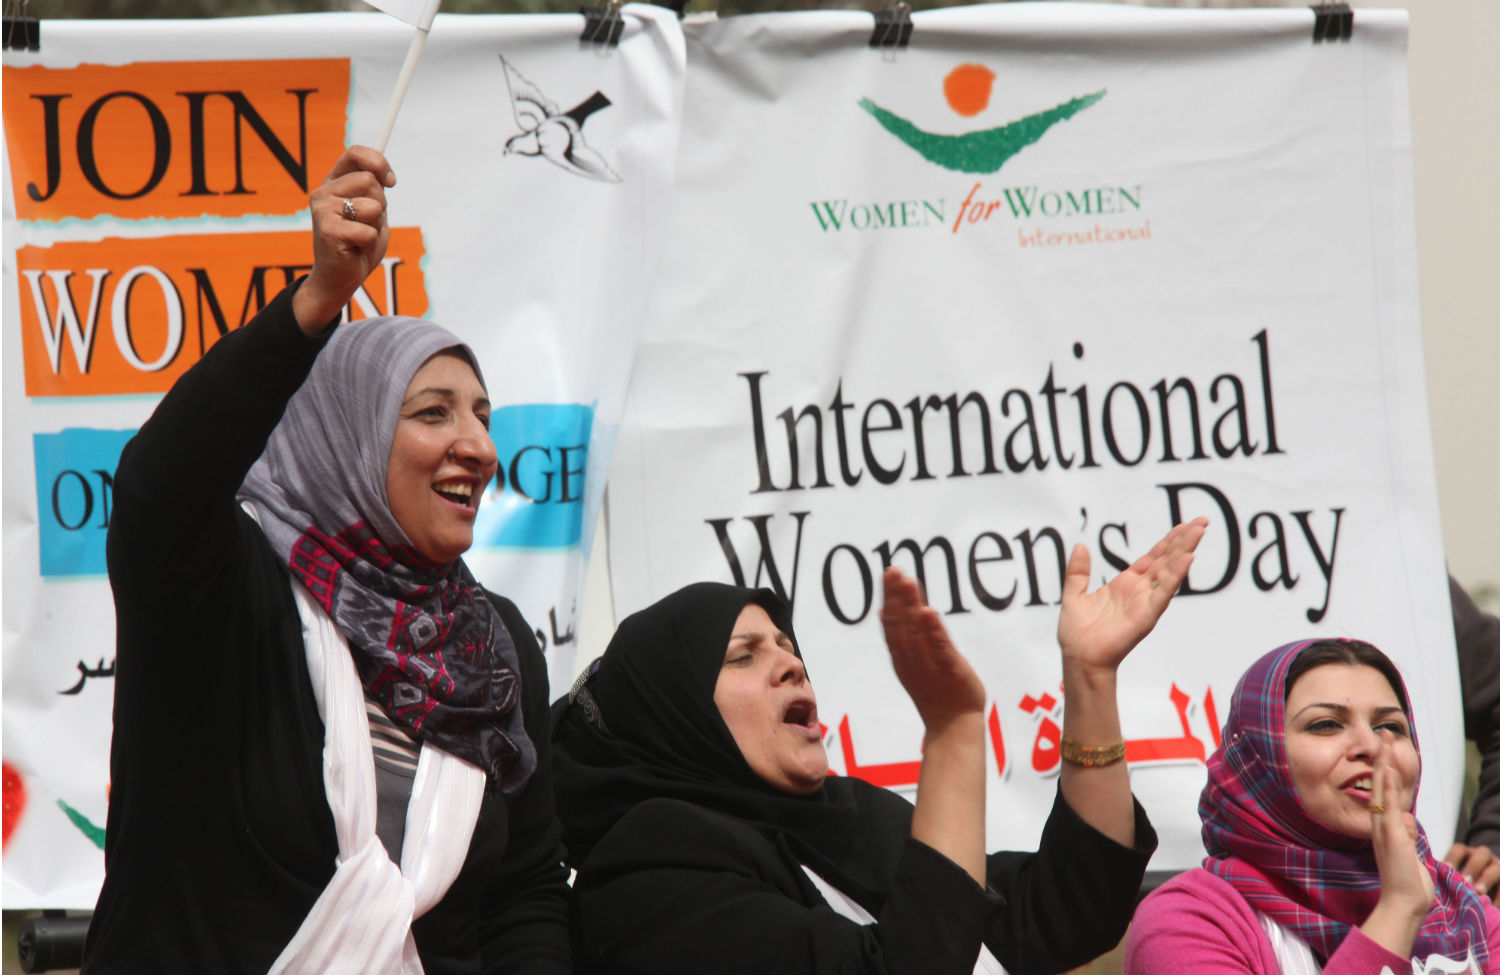   في يوم المرأة العالمي السفارة الأمريكية تكرم أصوات المرأة المصرية والخطوط الجوية الألمانية توزع الزهور